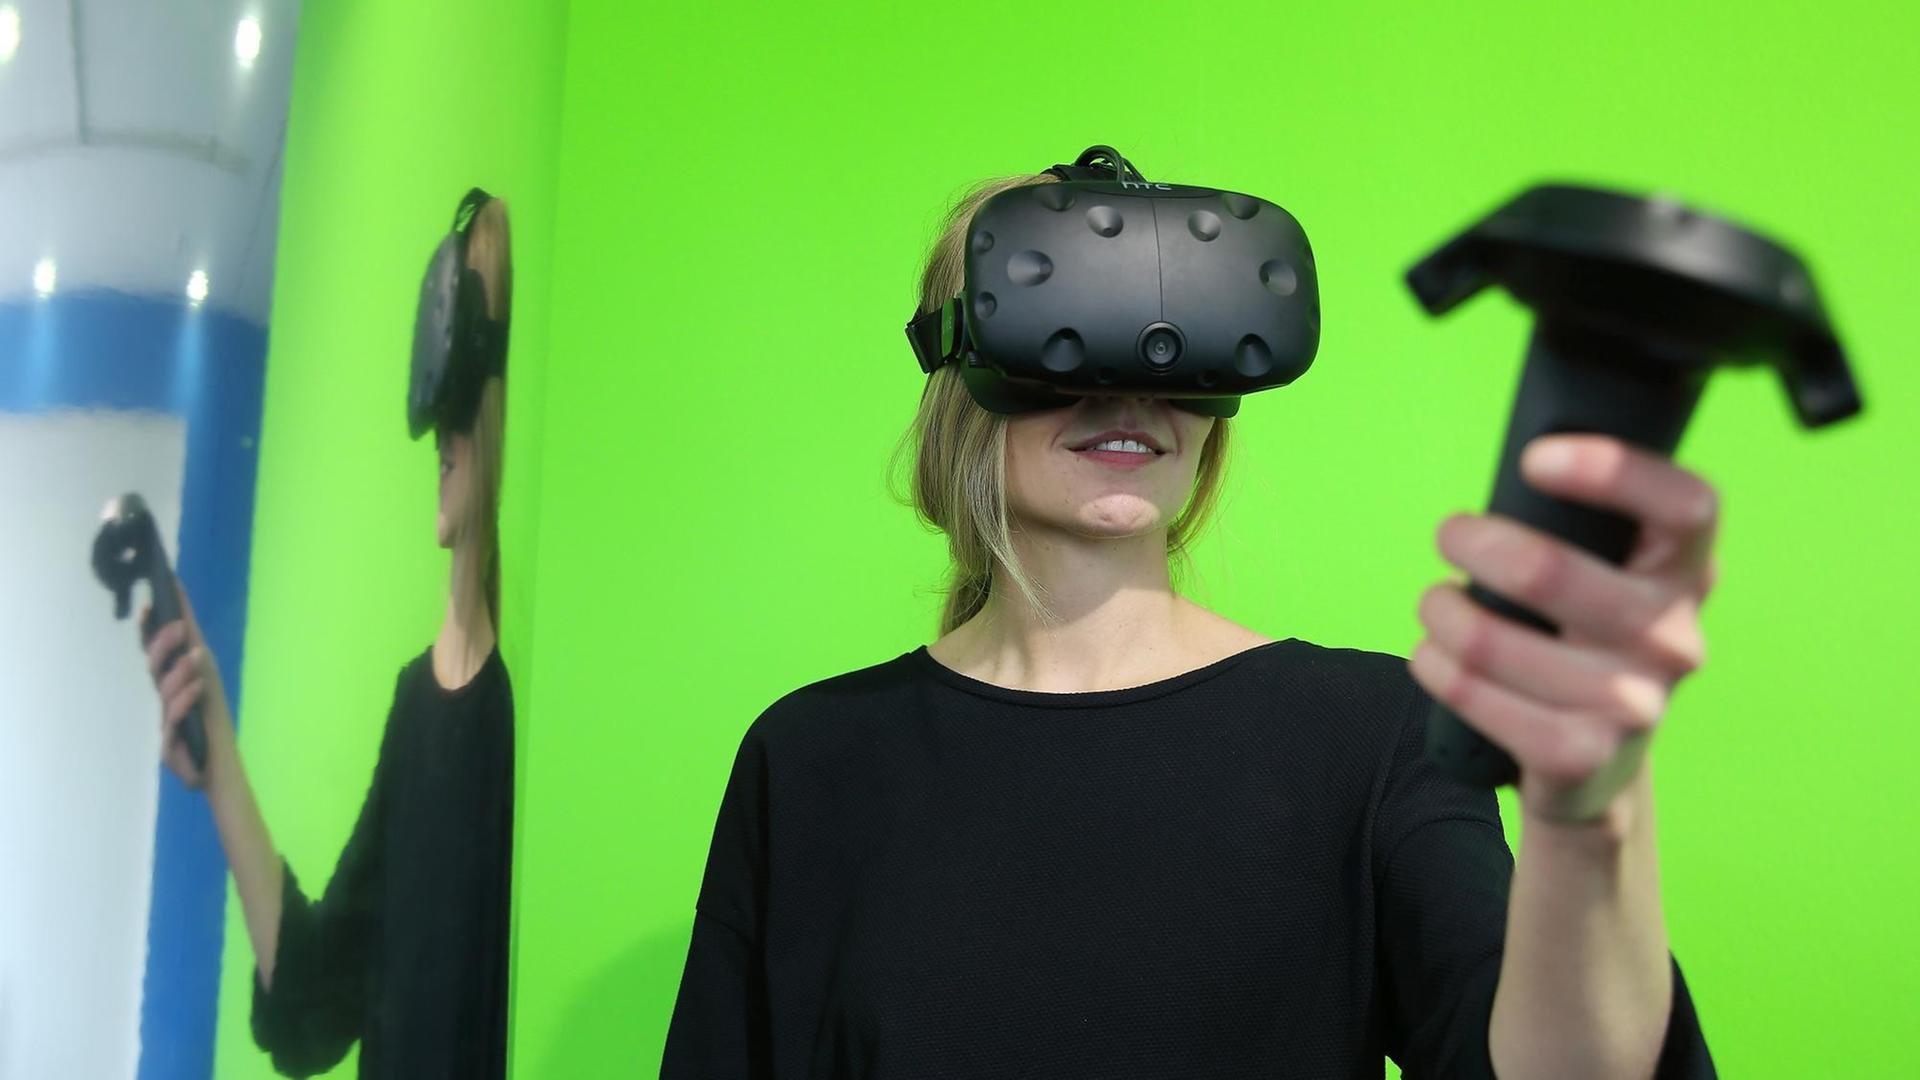 Eine Frau steht am 23.05.2017 im NRW-Forum in Düsseldorf vor einem grünem Hintergrund. Sie trägt eine Virtual-Reality-Brille und hält einen PC Controller, mit dem sie ihre virtuelle-Welt und Erlebnis steuert. Foto: David Young / dpa